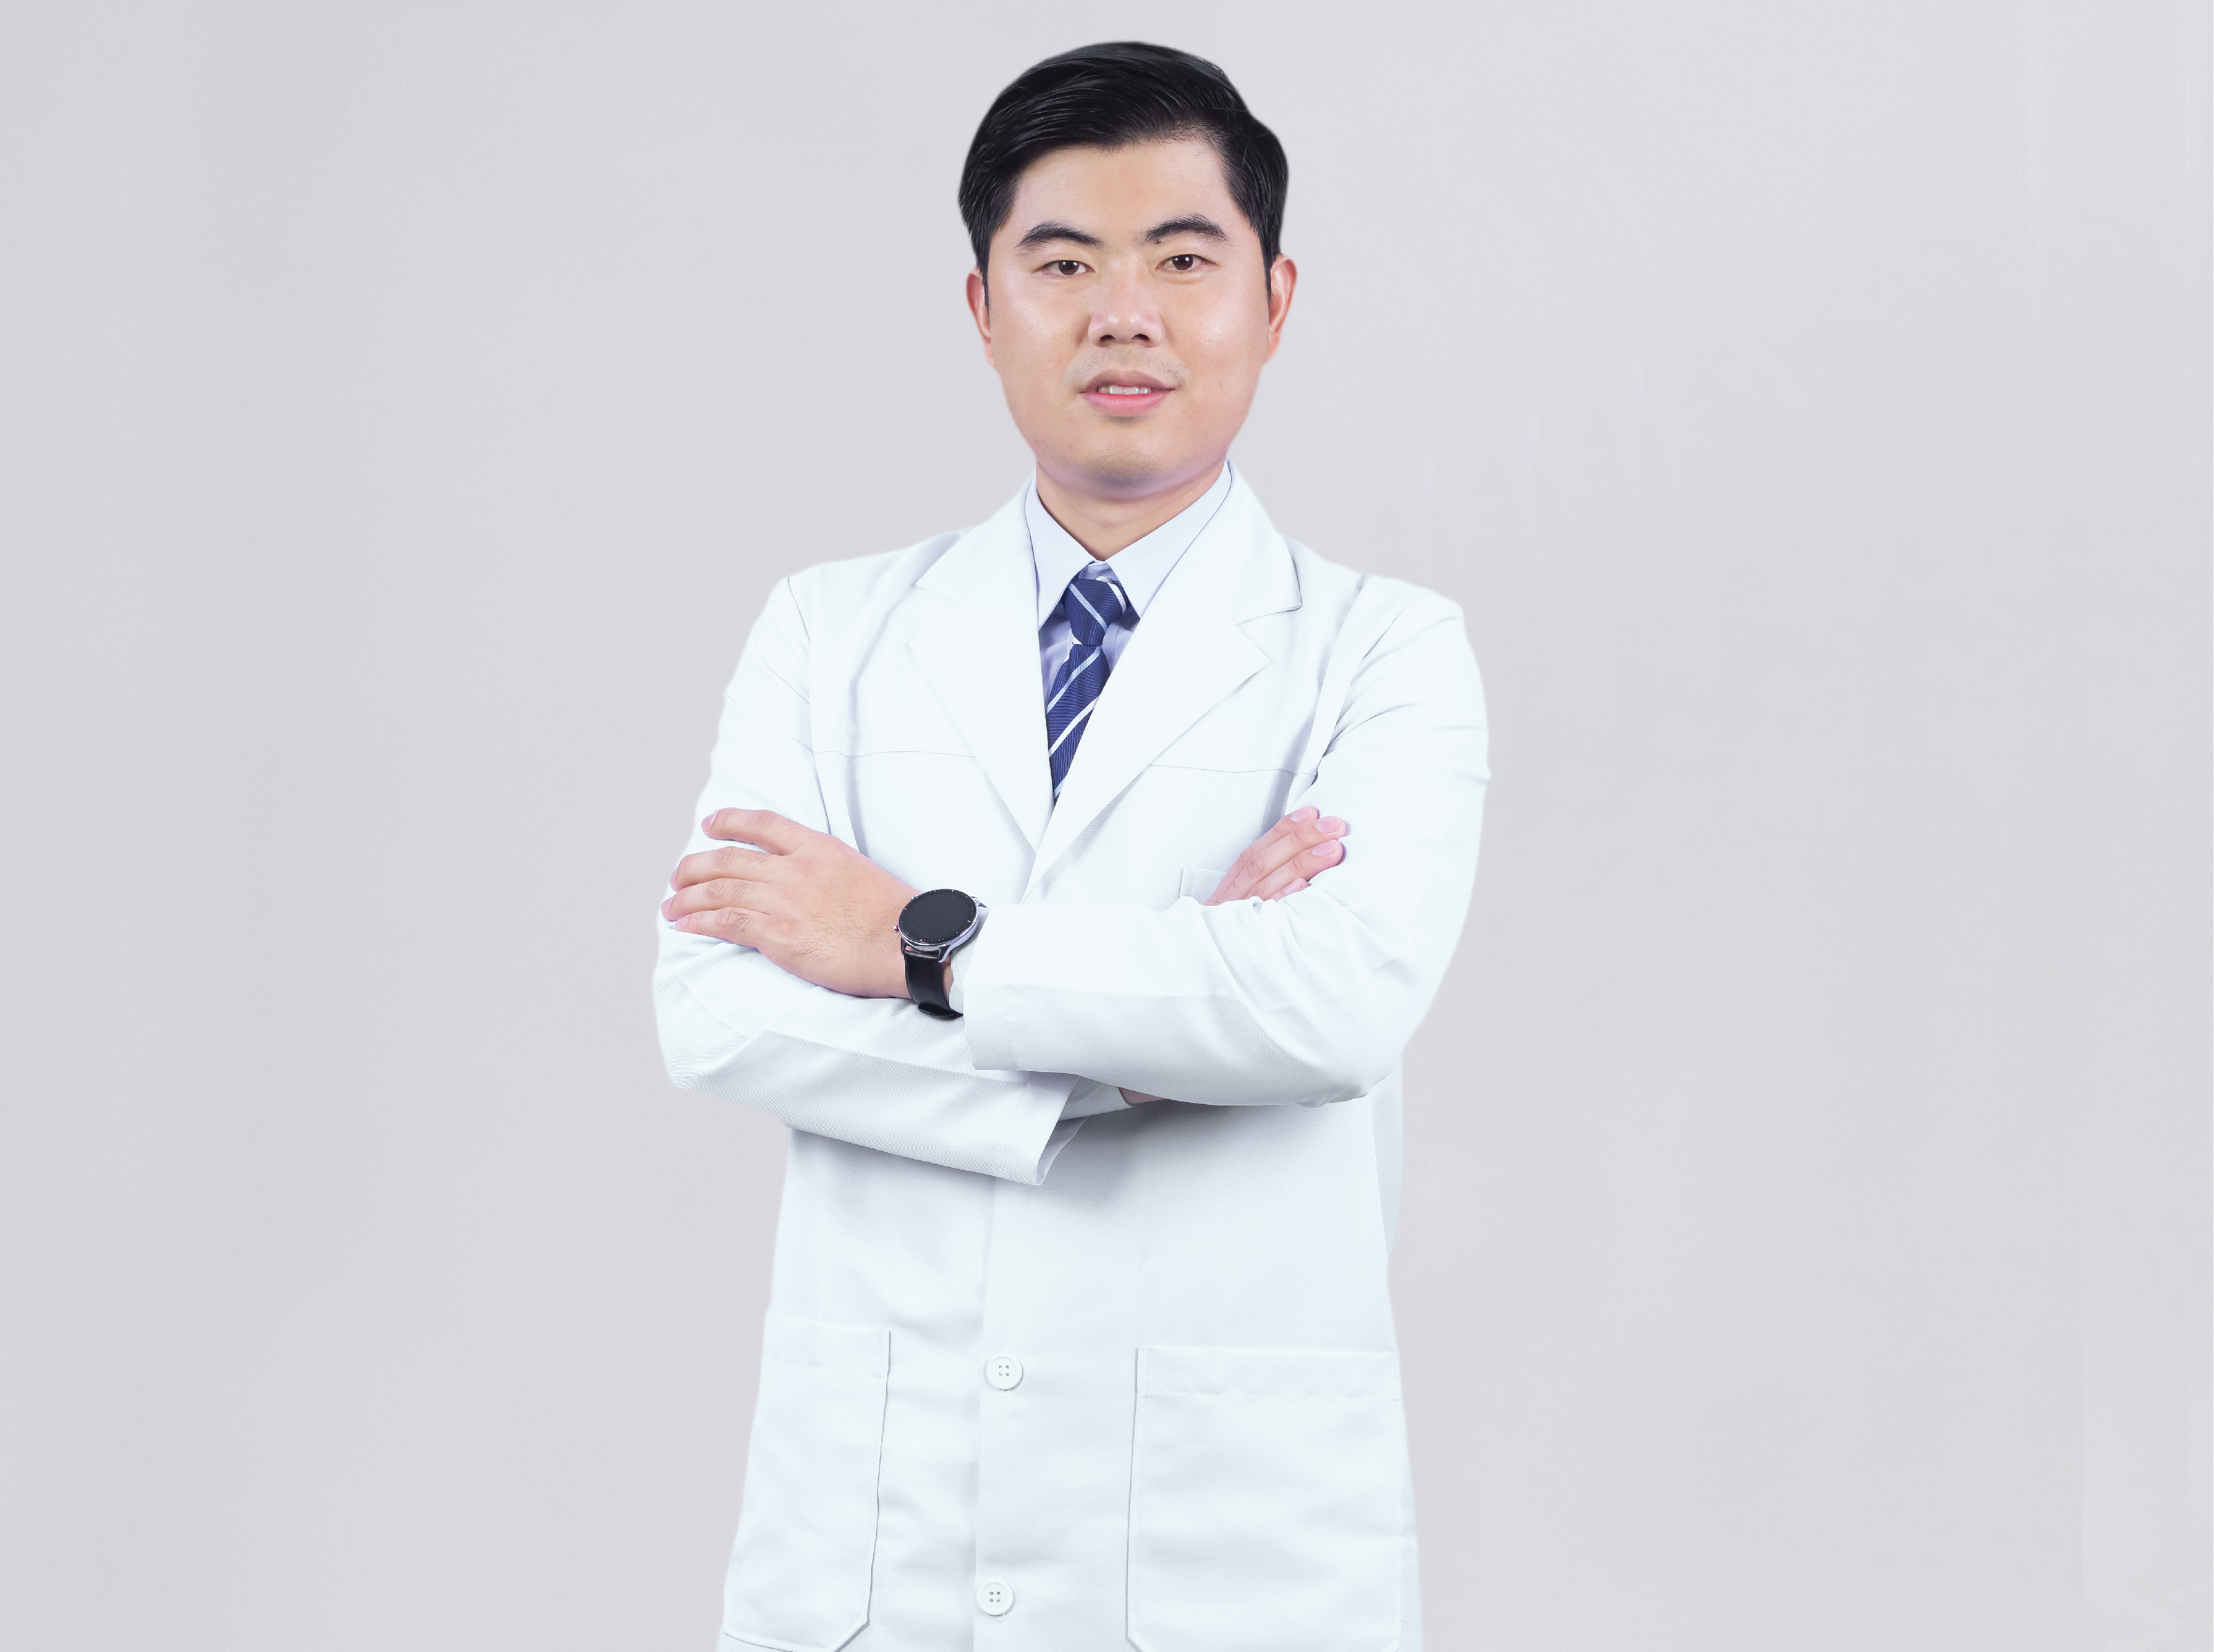 Dr. Leangseng Oeng